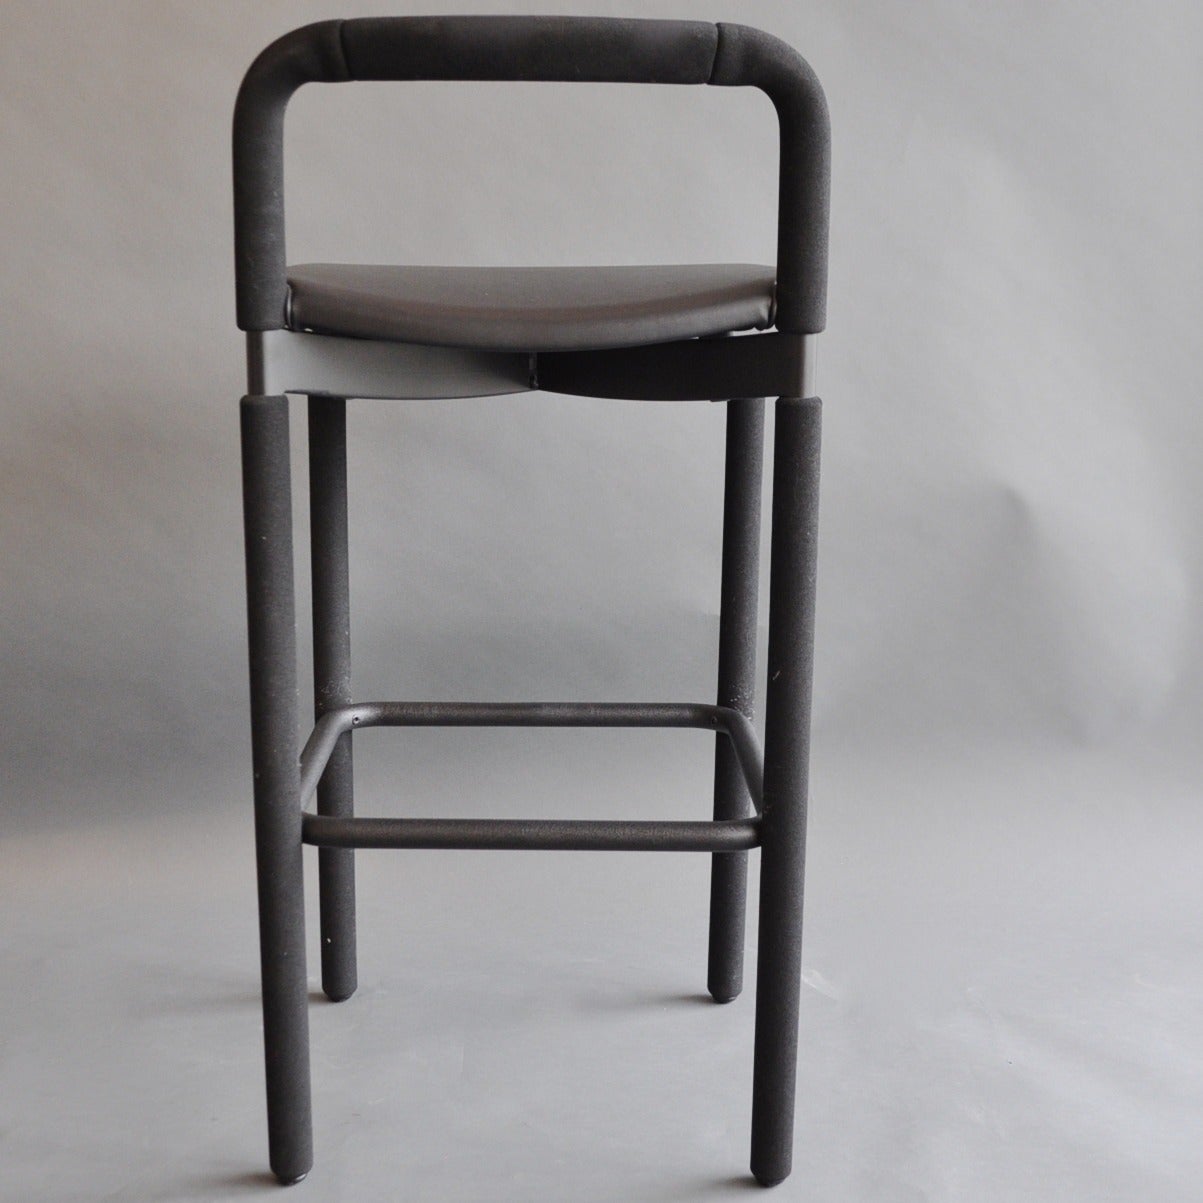 kane's furniture bar stools